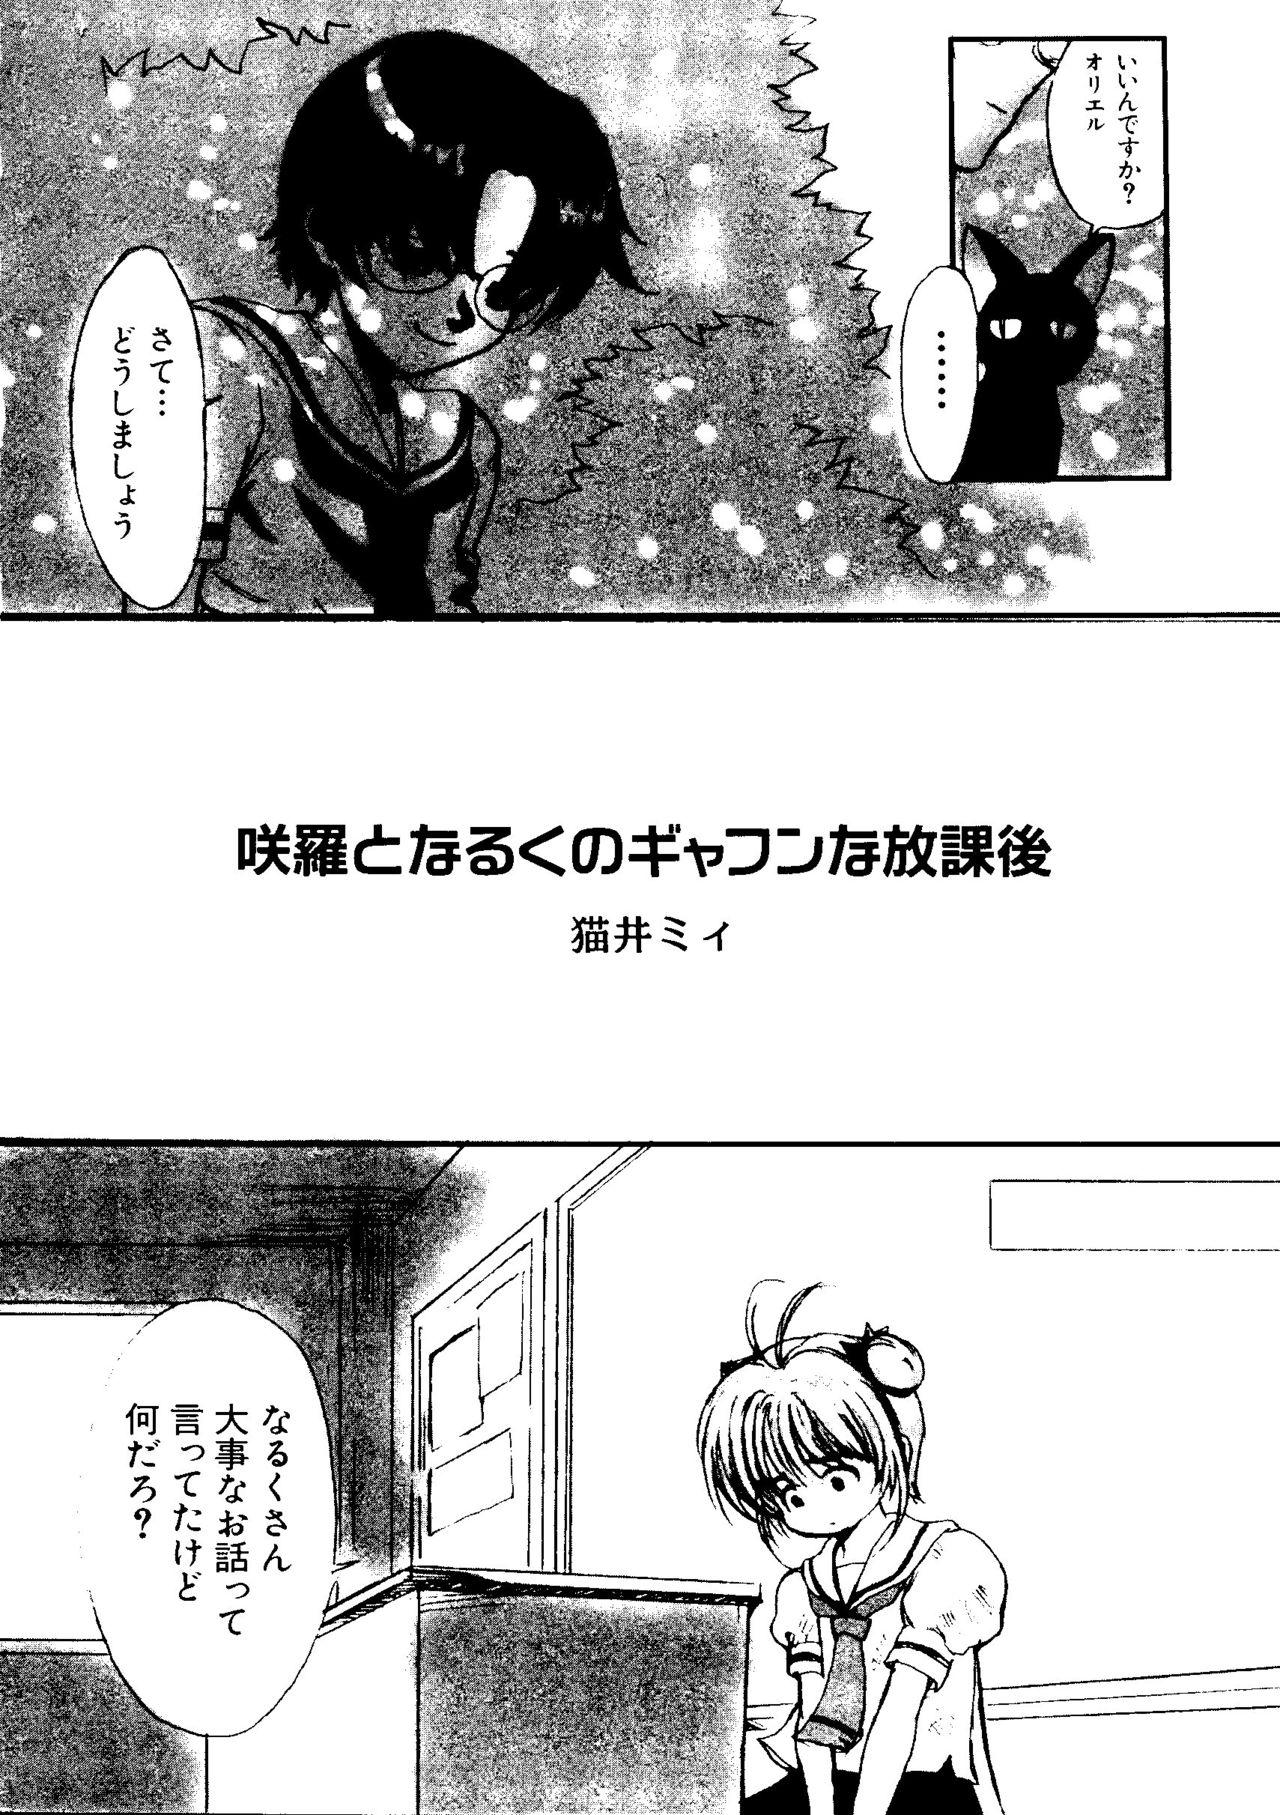 Van Love Chara Taizen No. 5 - Cardcaptor sakura Ojamajo doremi Digimon adventure Ecoko Azuki chan Juggs - Page 7